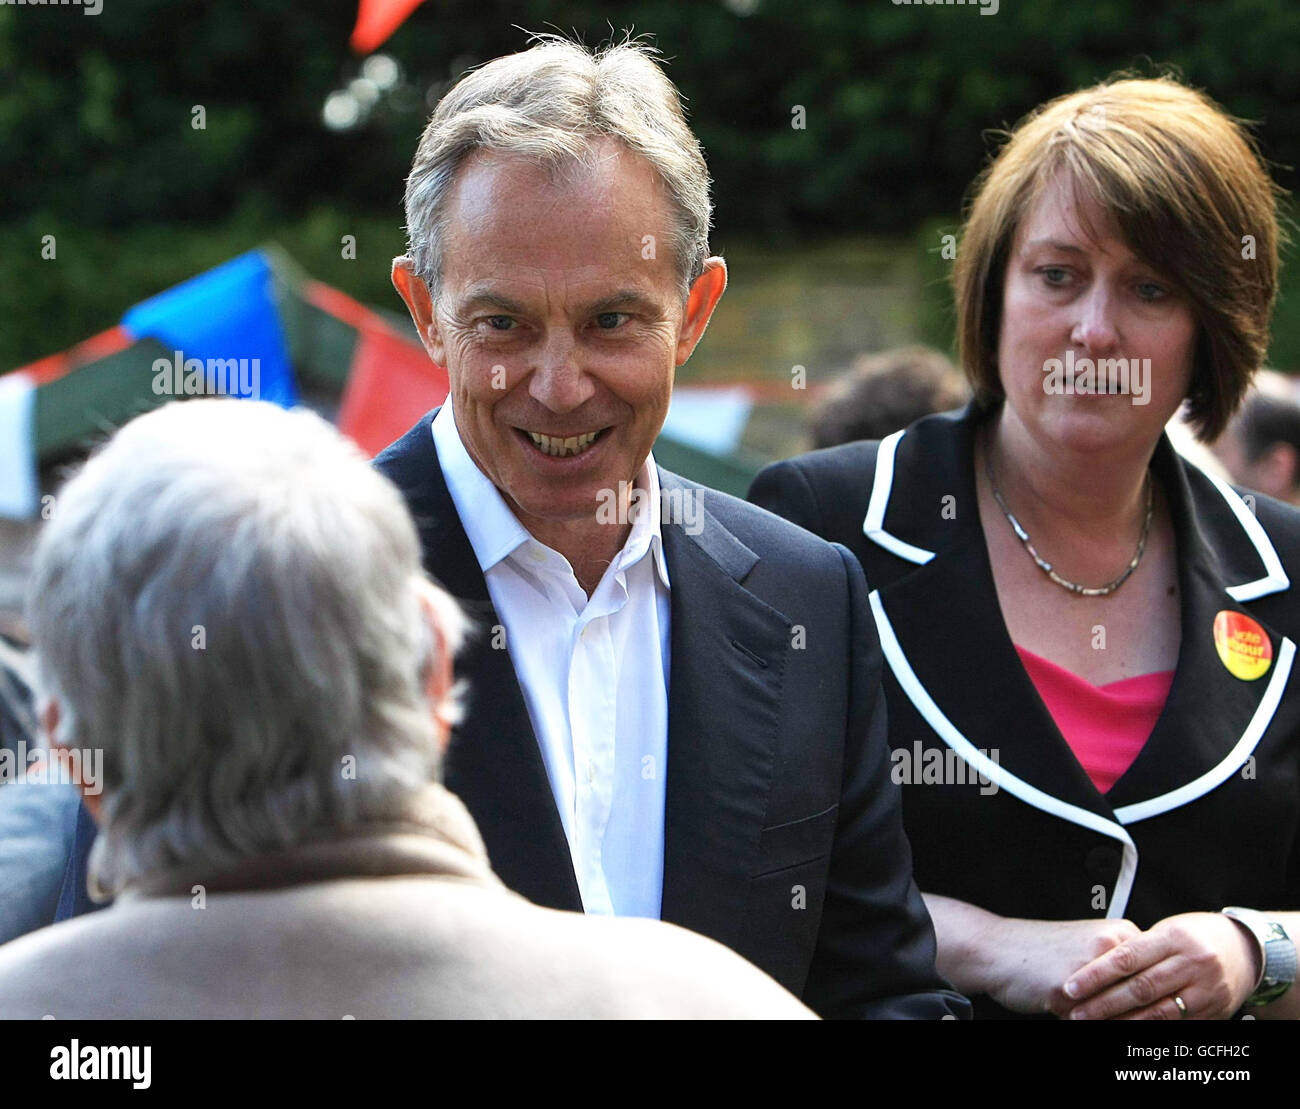 L'ex primo ministro Tony Blair ha condotto una campagna a fianco dell'ex segretario agli interni Jacqui Smith nella sua circoscrizione di Redditch. Foto Stock